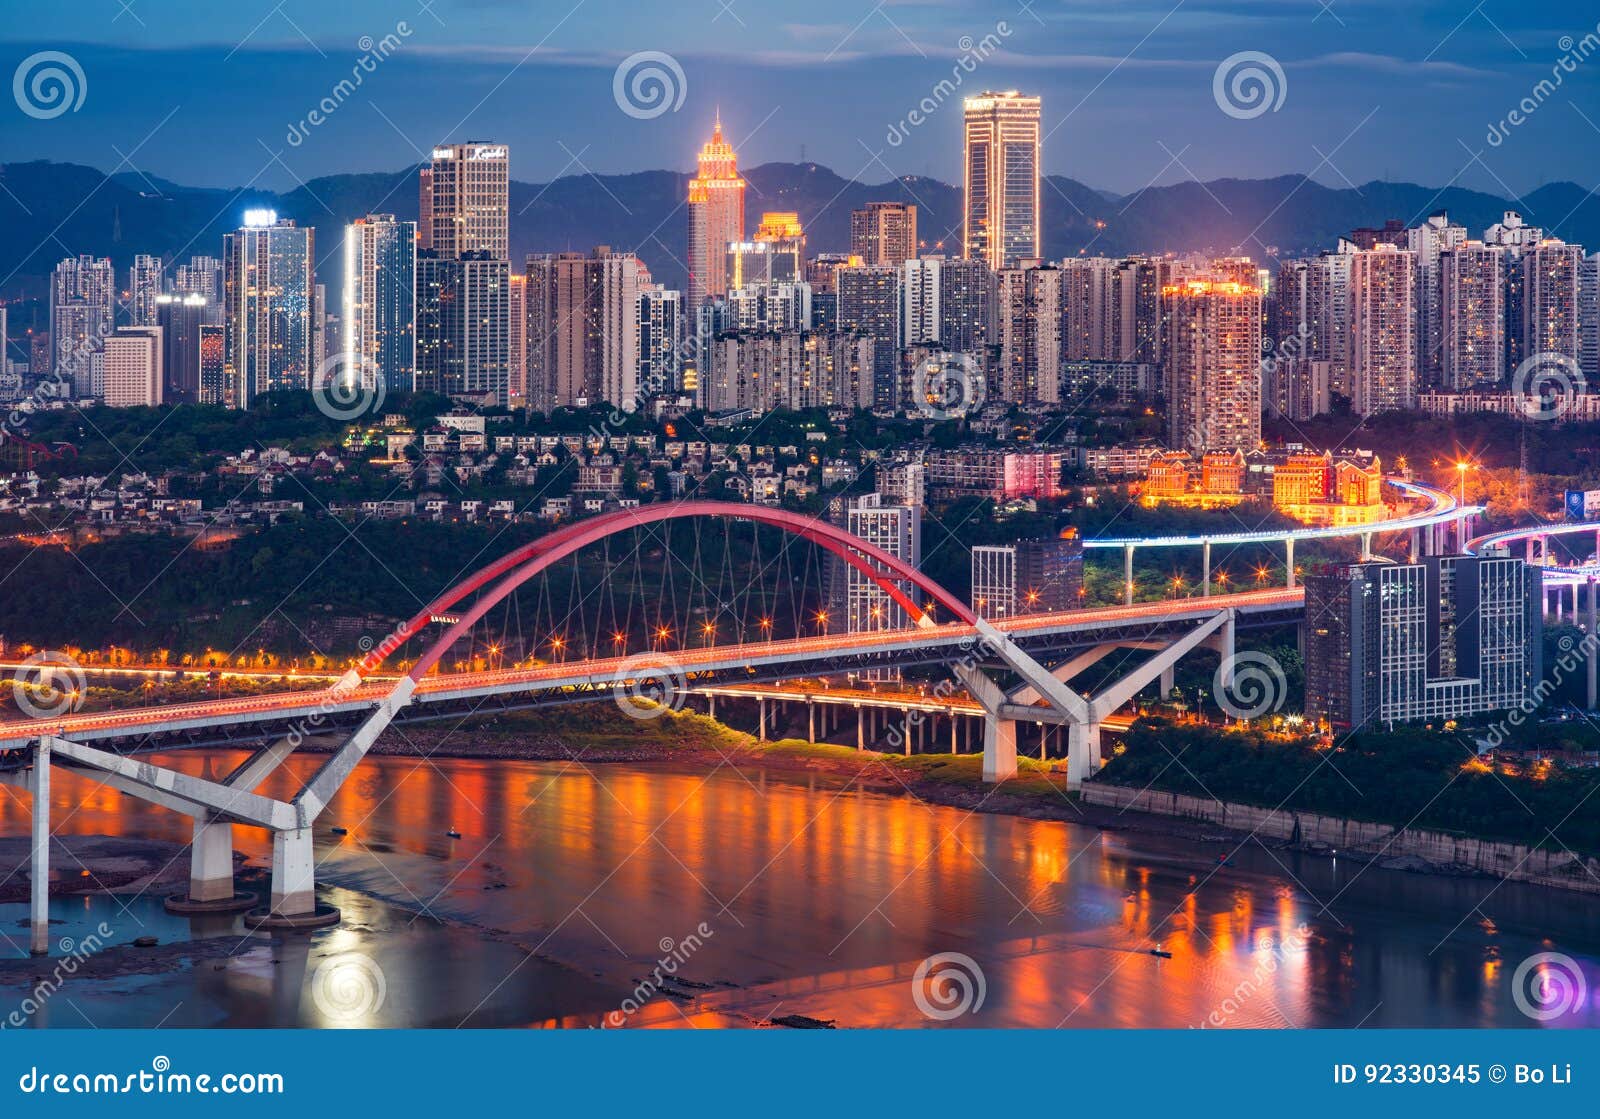 chongqing caiyuanba bridge at night